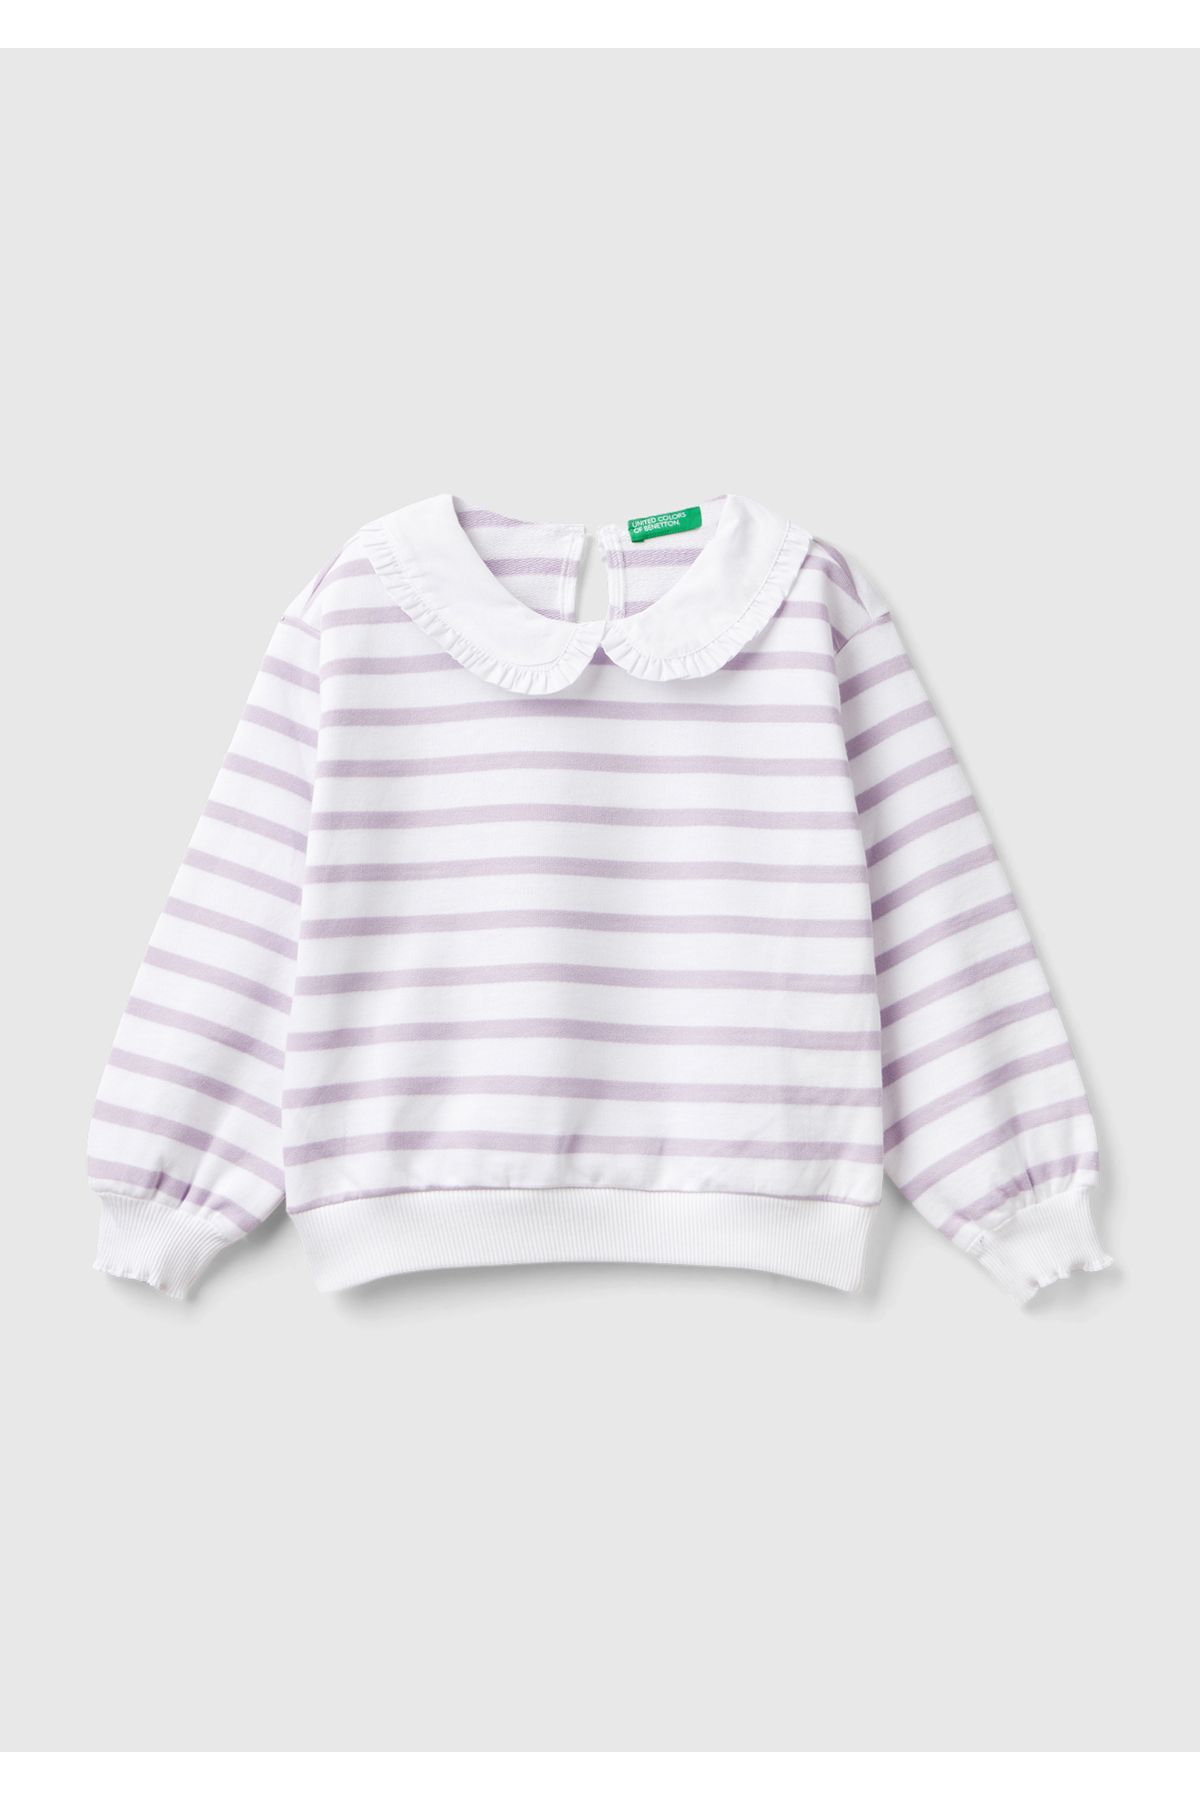 United Colors of Benetton Kız Çocuk Lila-Beyaz Fırfırlı Yaka Detaylı Çizgili Sweatshirt